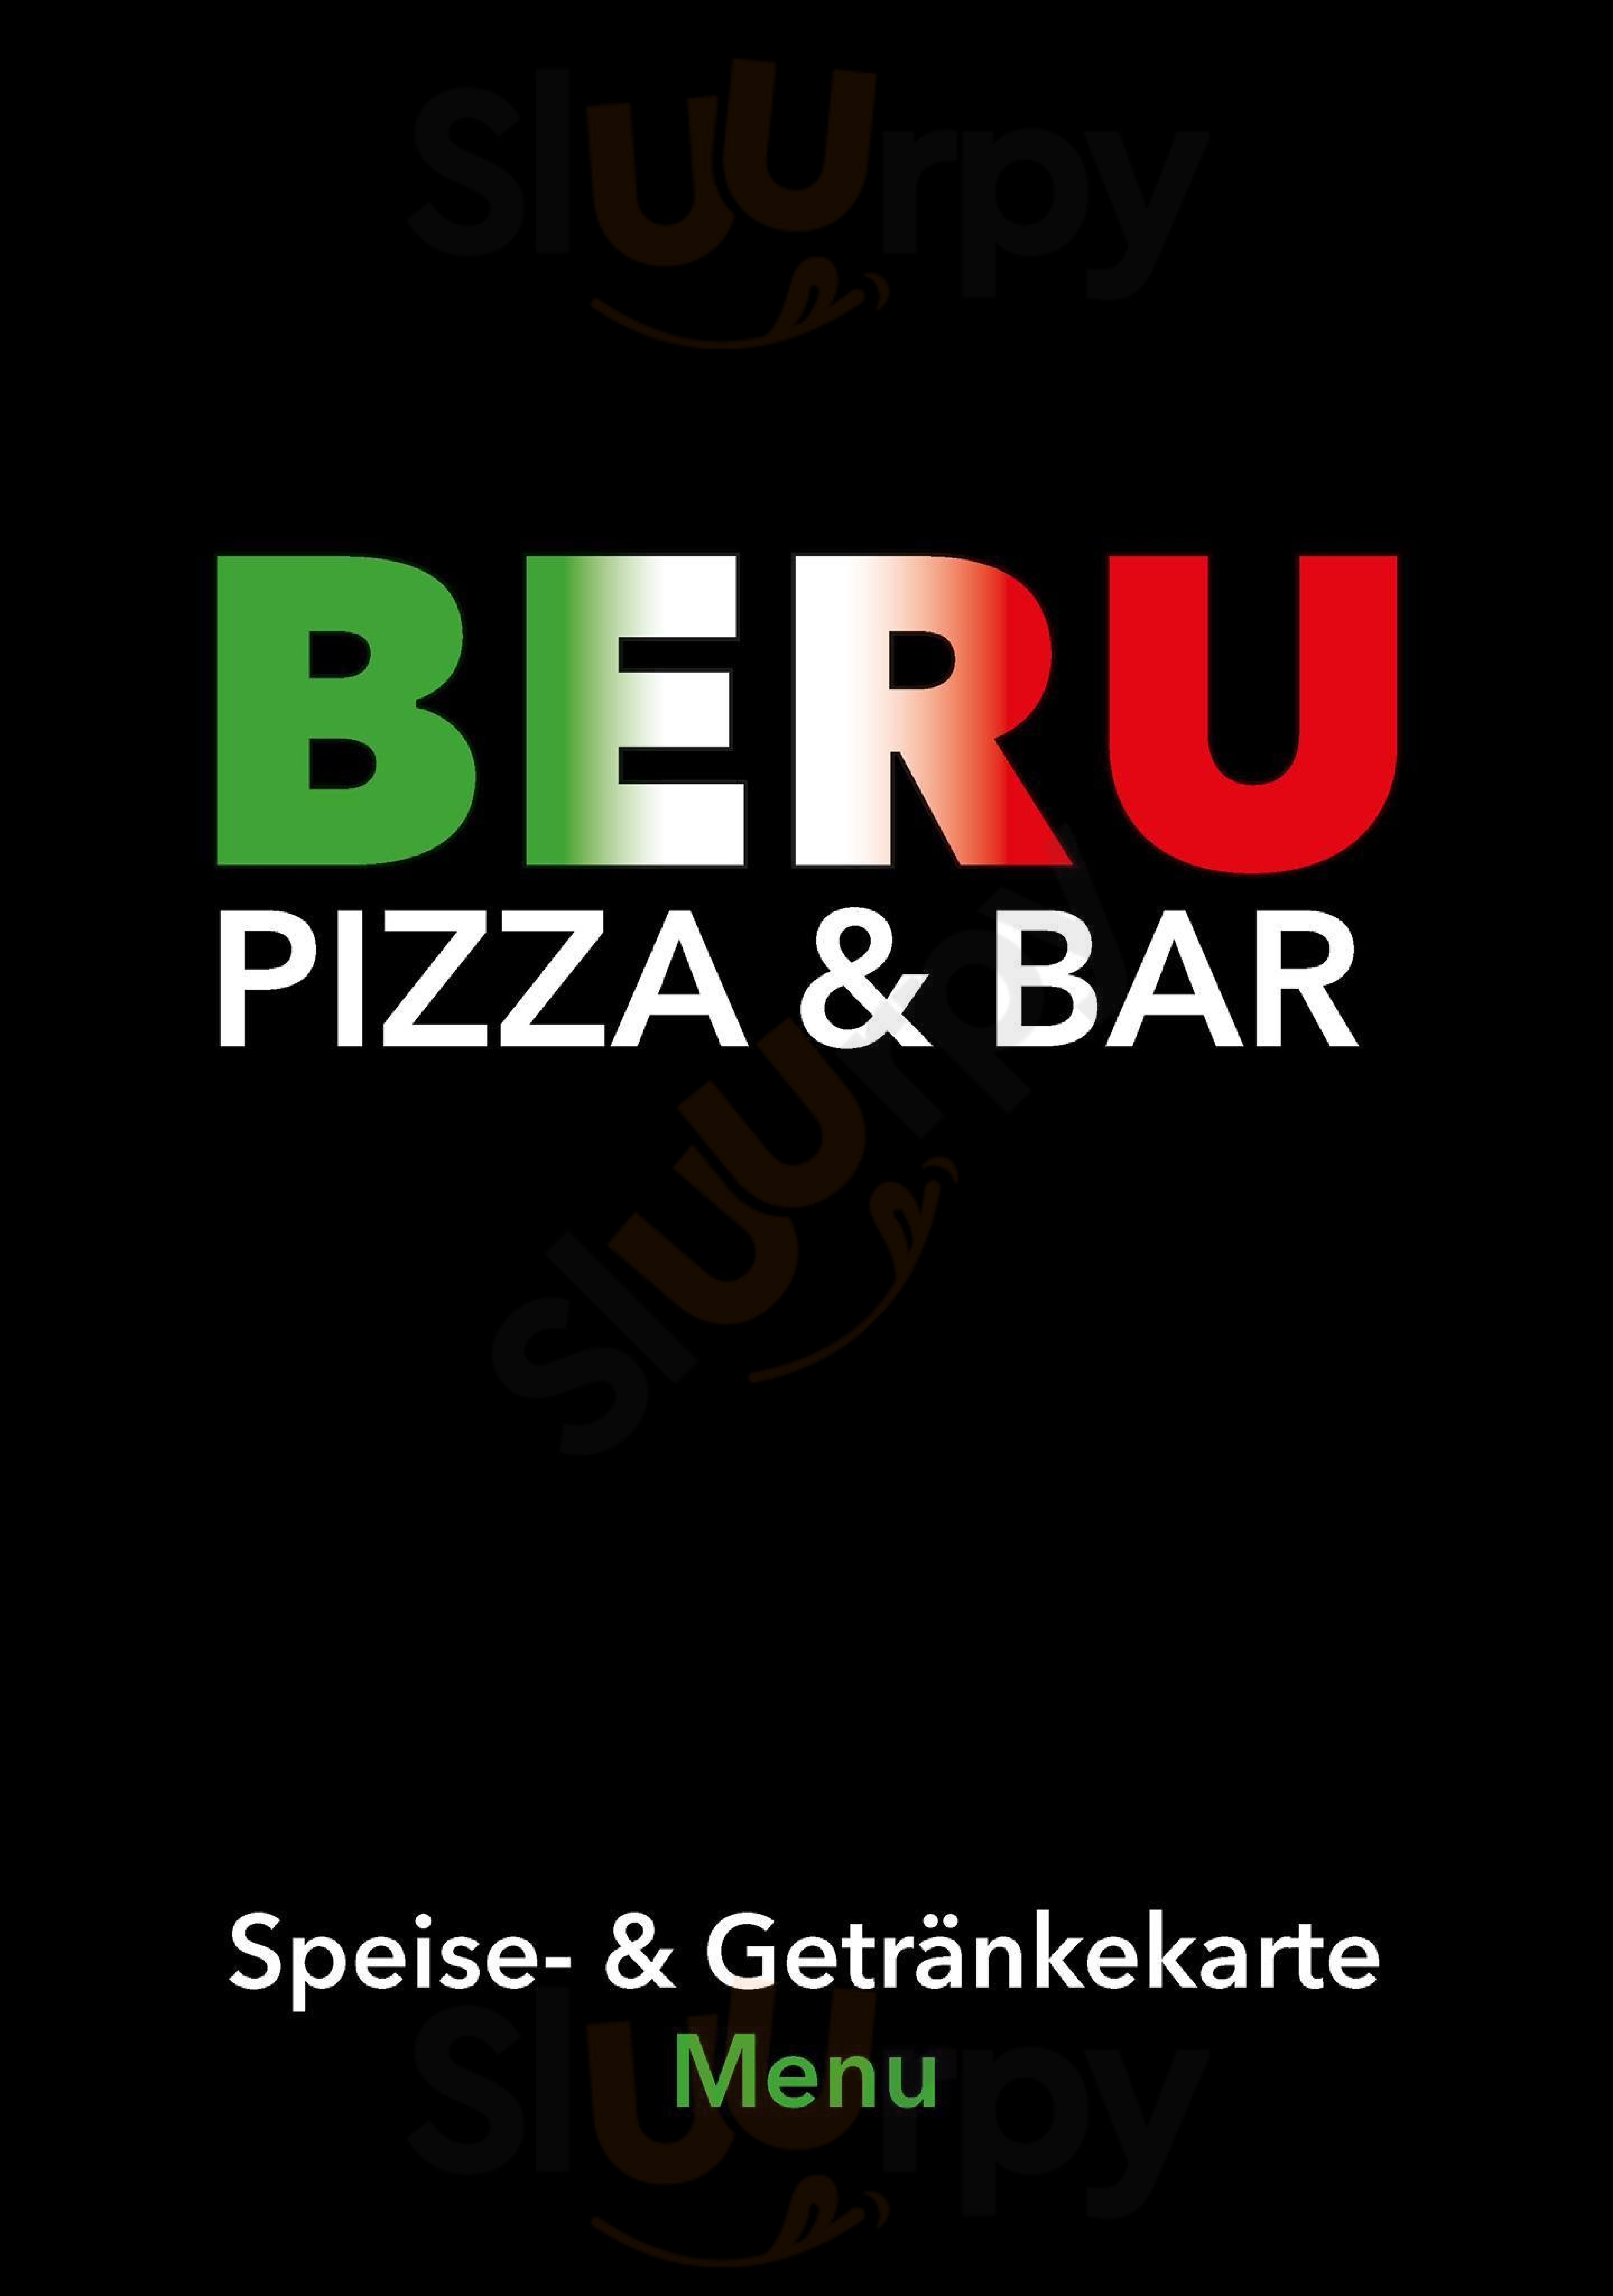 Beru - Pizza & Bar München Menu - 1